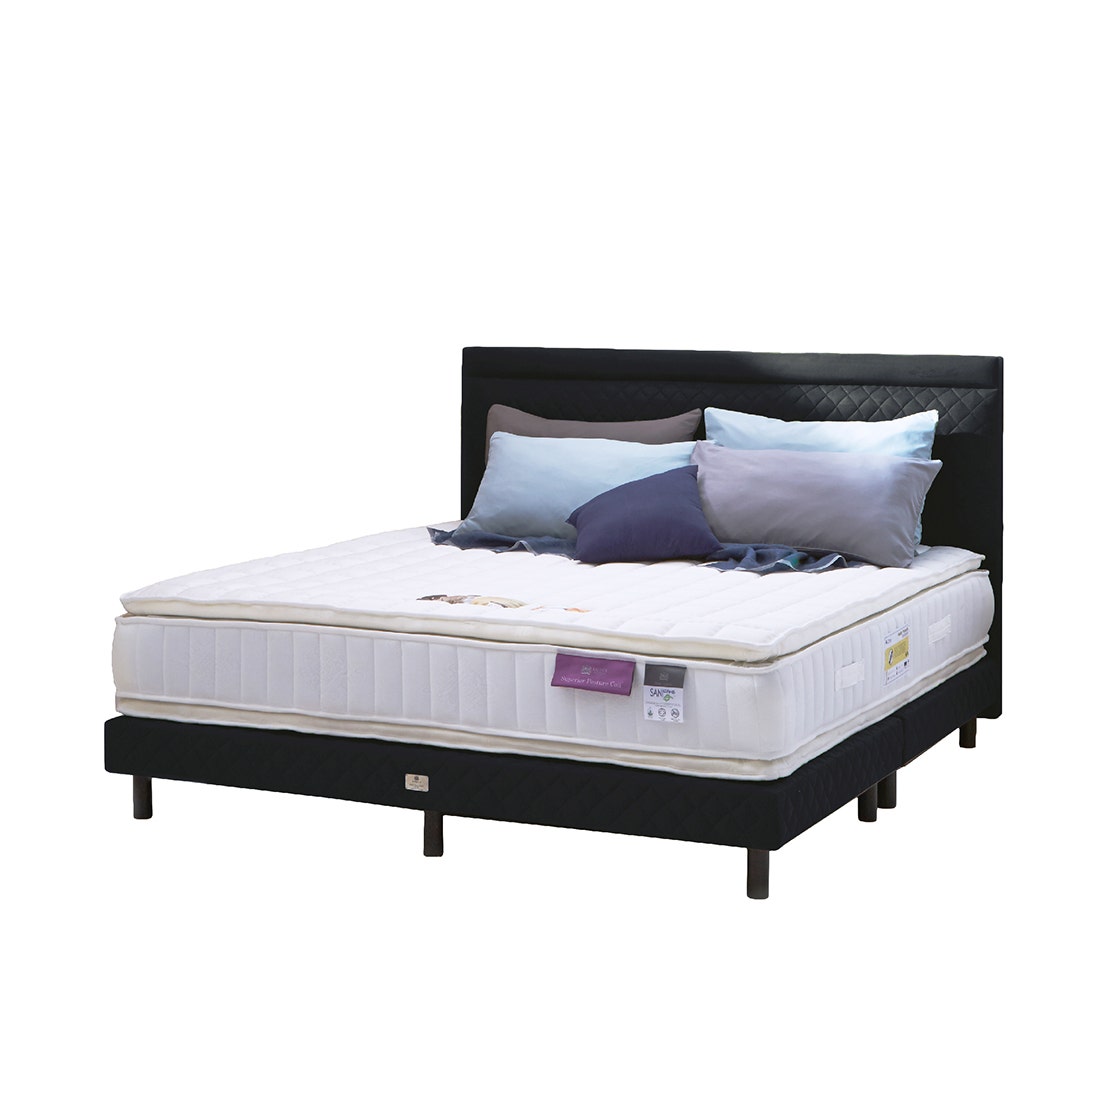 39005132-mattress-bedding-mattresses-spring-mattresses-02